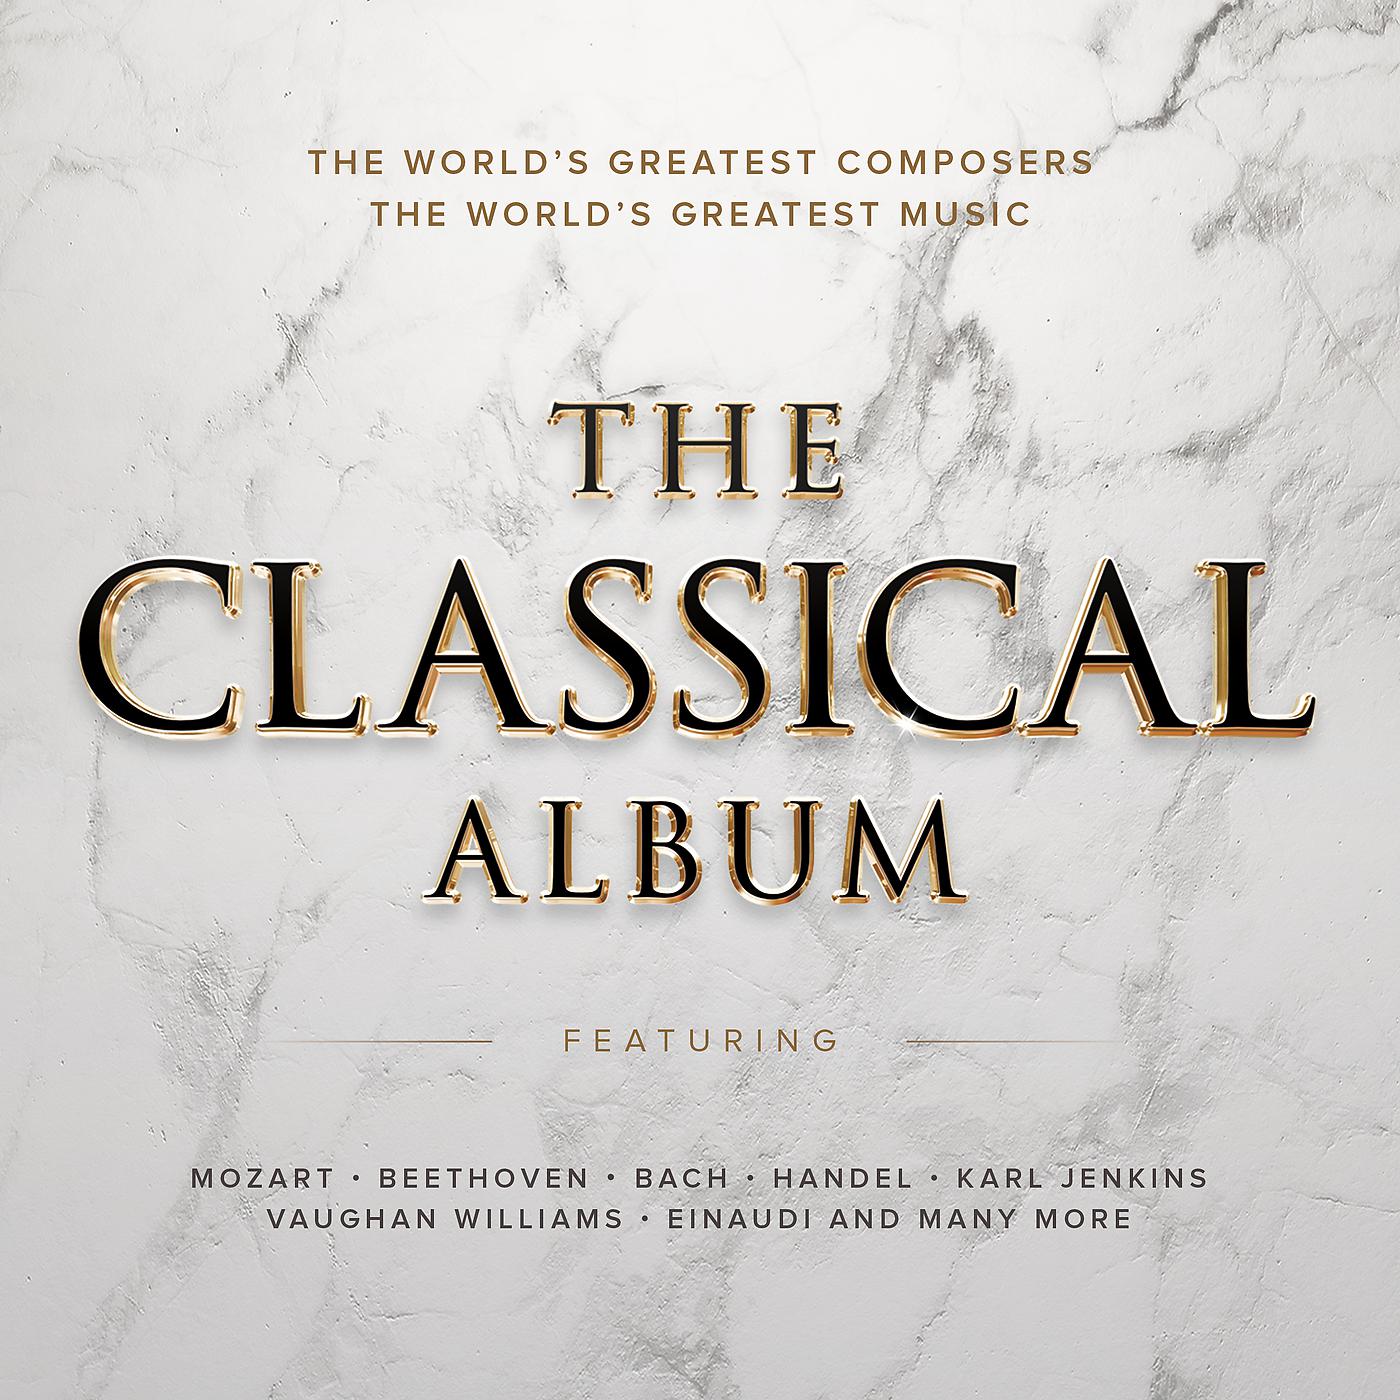 Классические обложки. Классическая музыка обложка. Обложки классических альбомов. Классика музыка альбом. Обложки для музыкальных альбомов классика.